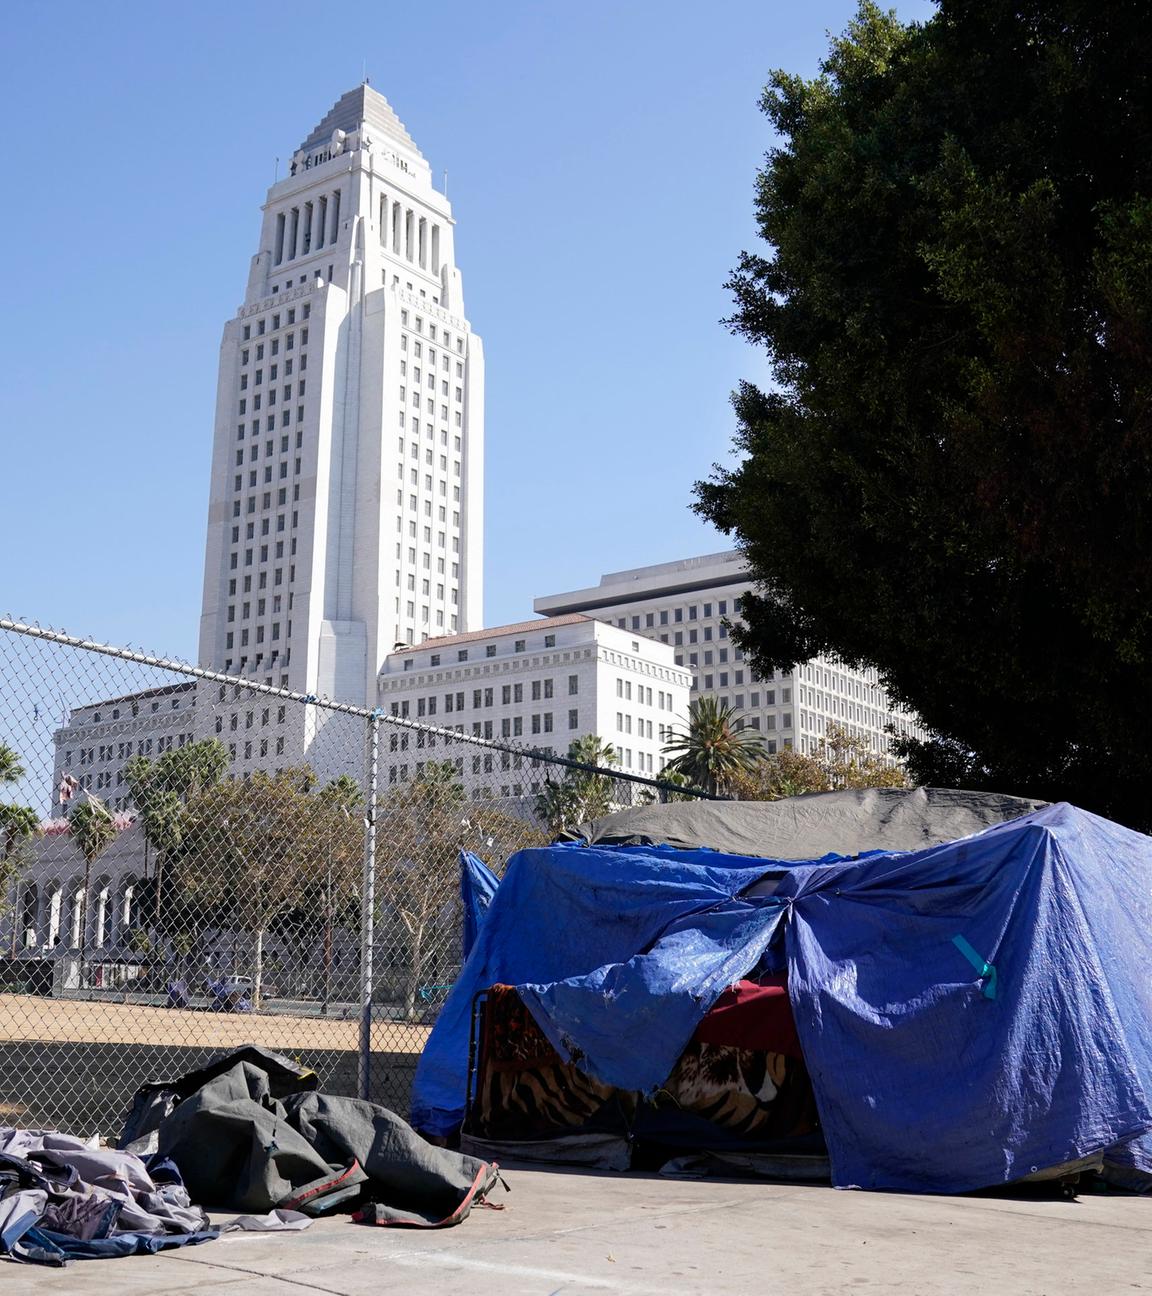 Archiv: Das Zelt eines Obdachlosen steht direkt vor dem Grand Park mit dem Rathaus von Los Angeles im Hintergrund, Mittwoch, 28. Oktober 2020, in Los Angeles.